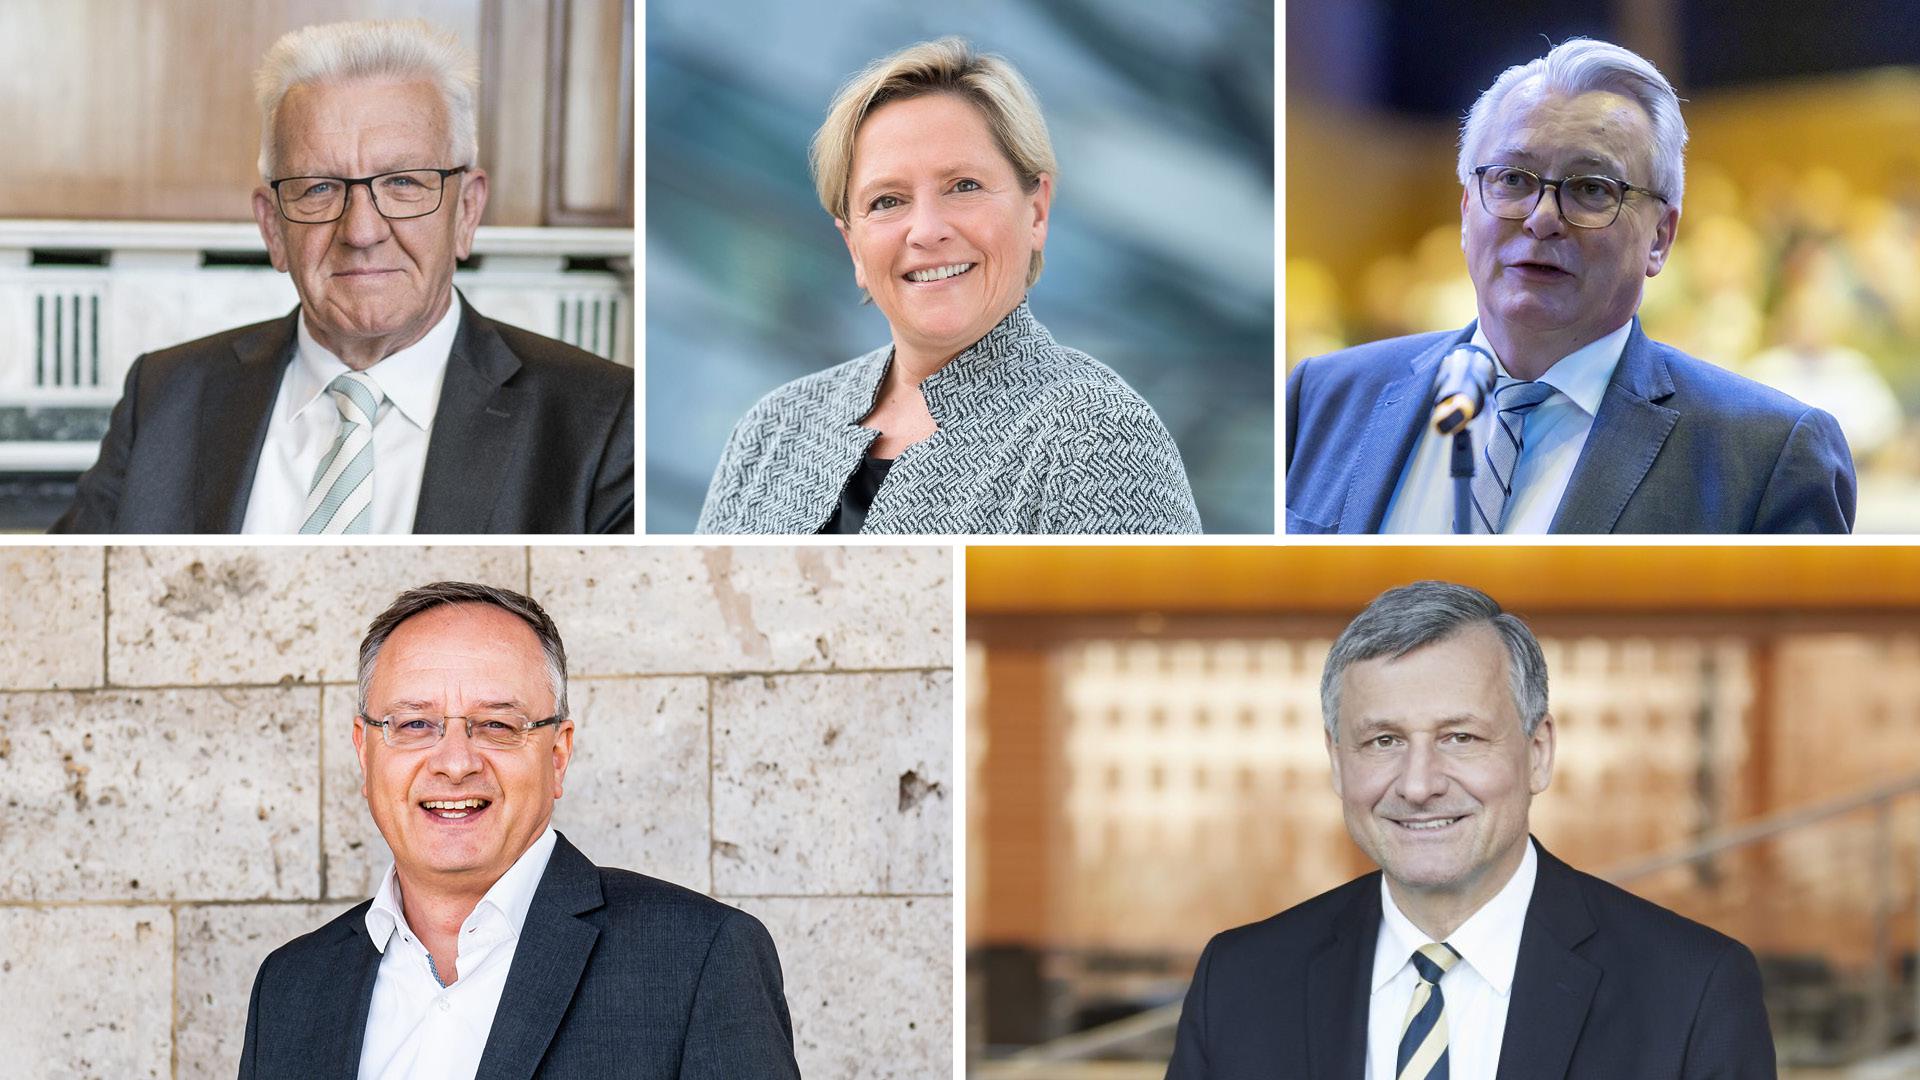 Die Gäste des BNN-Forums: Winfried
 Kretschmann
 (Bündnis 90/Die Grünen), Susanne
 Eisenmann
 (CDU), Bernd
 Gögel
 (AfD), Andreas
Stoch
 (SPD), Hans-Ulrich
 Rülke
 (FDP)